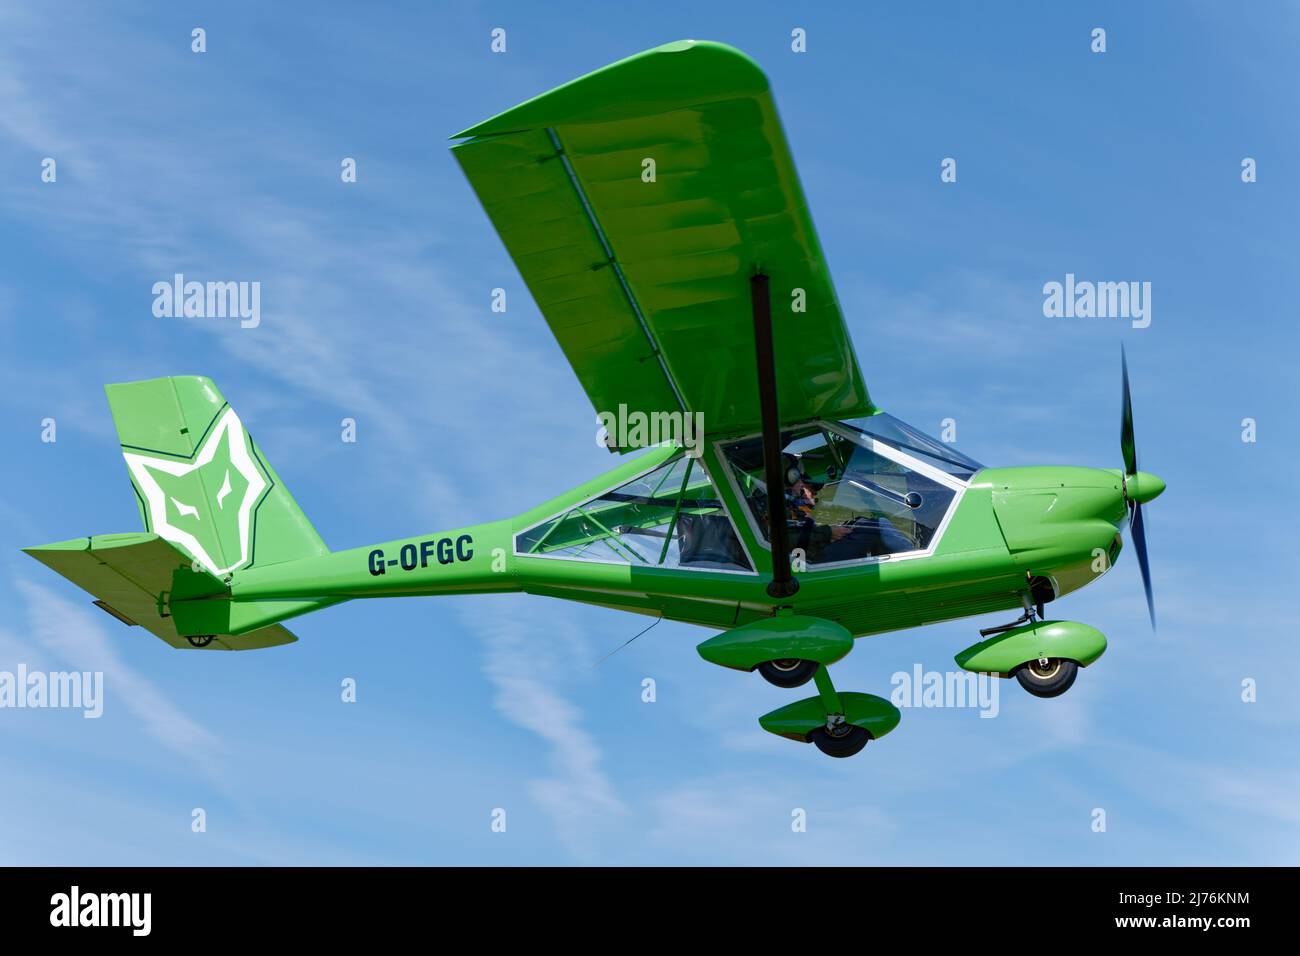 Vert immaculé Aeoprakt A22 Foxbat avion construit à domicile G-OFGC décollage de l'aérodrome de Popham dans le Hampshire Angleterre à l'avion de micro-lumière annuel Banque D'Images